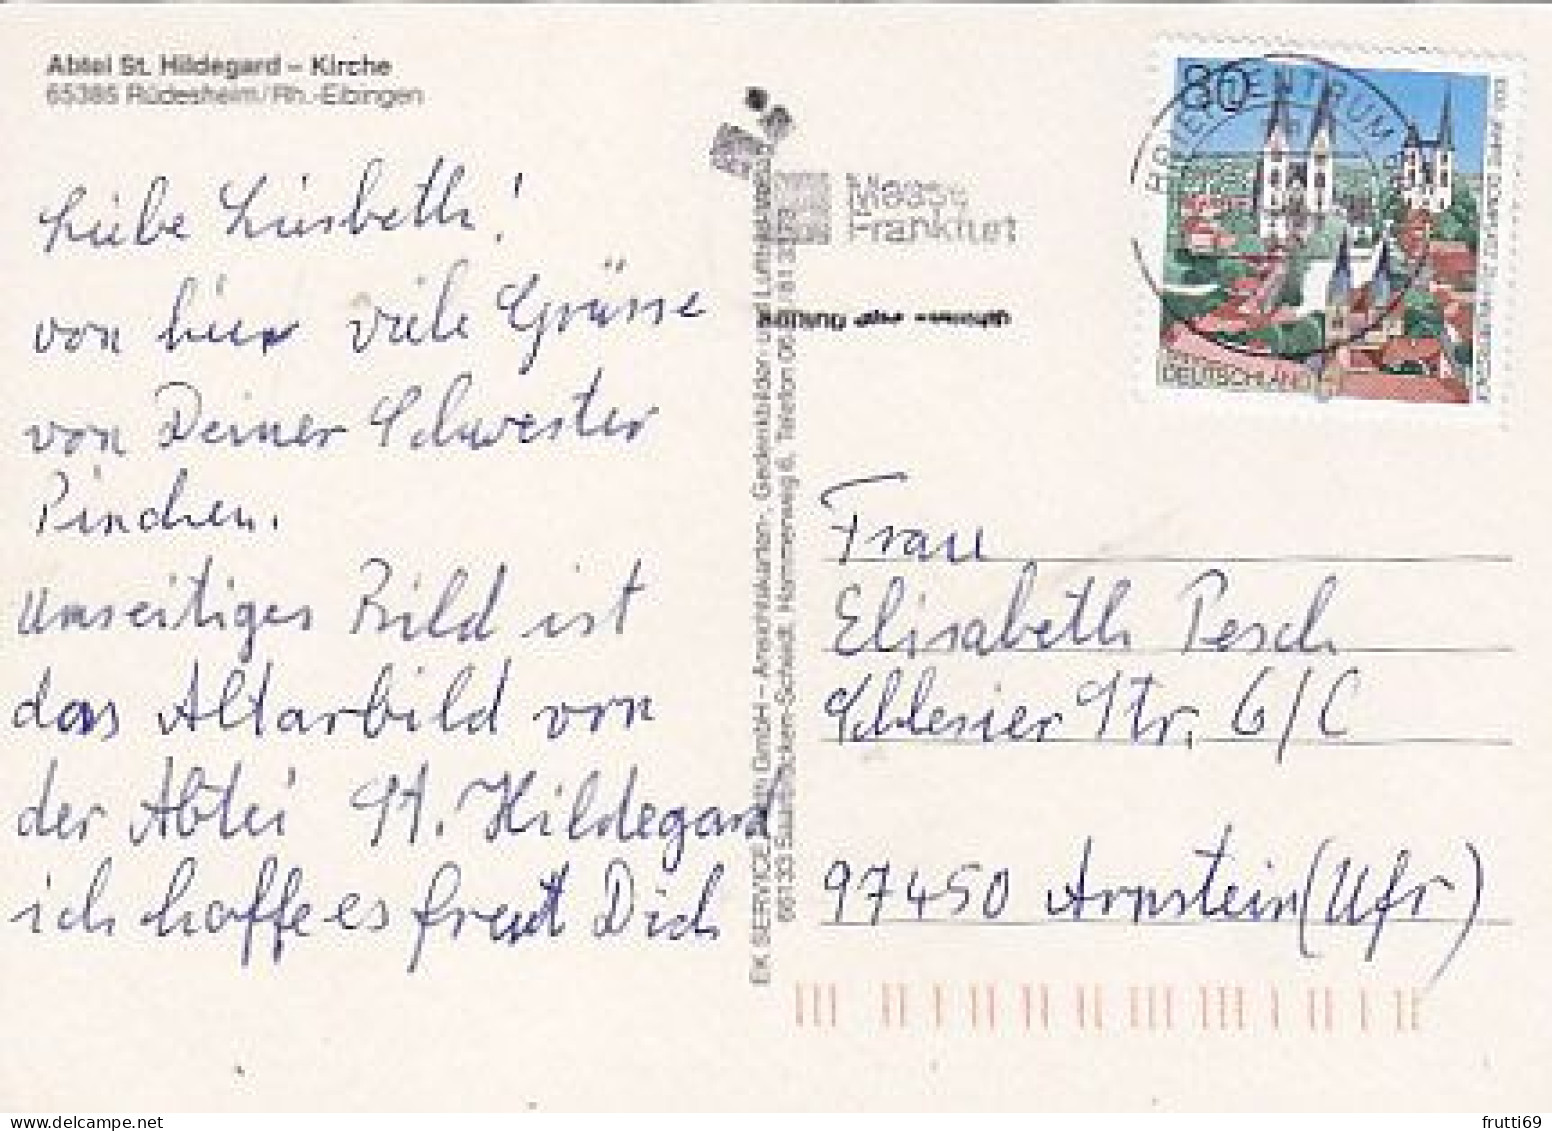 AK 215454 CHURCH / KIRCHE ... - Rüdesheim / Rh.-Eibingen - Abtei St. Hildegard Kirche - Churches & Convents